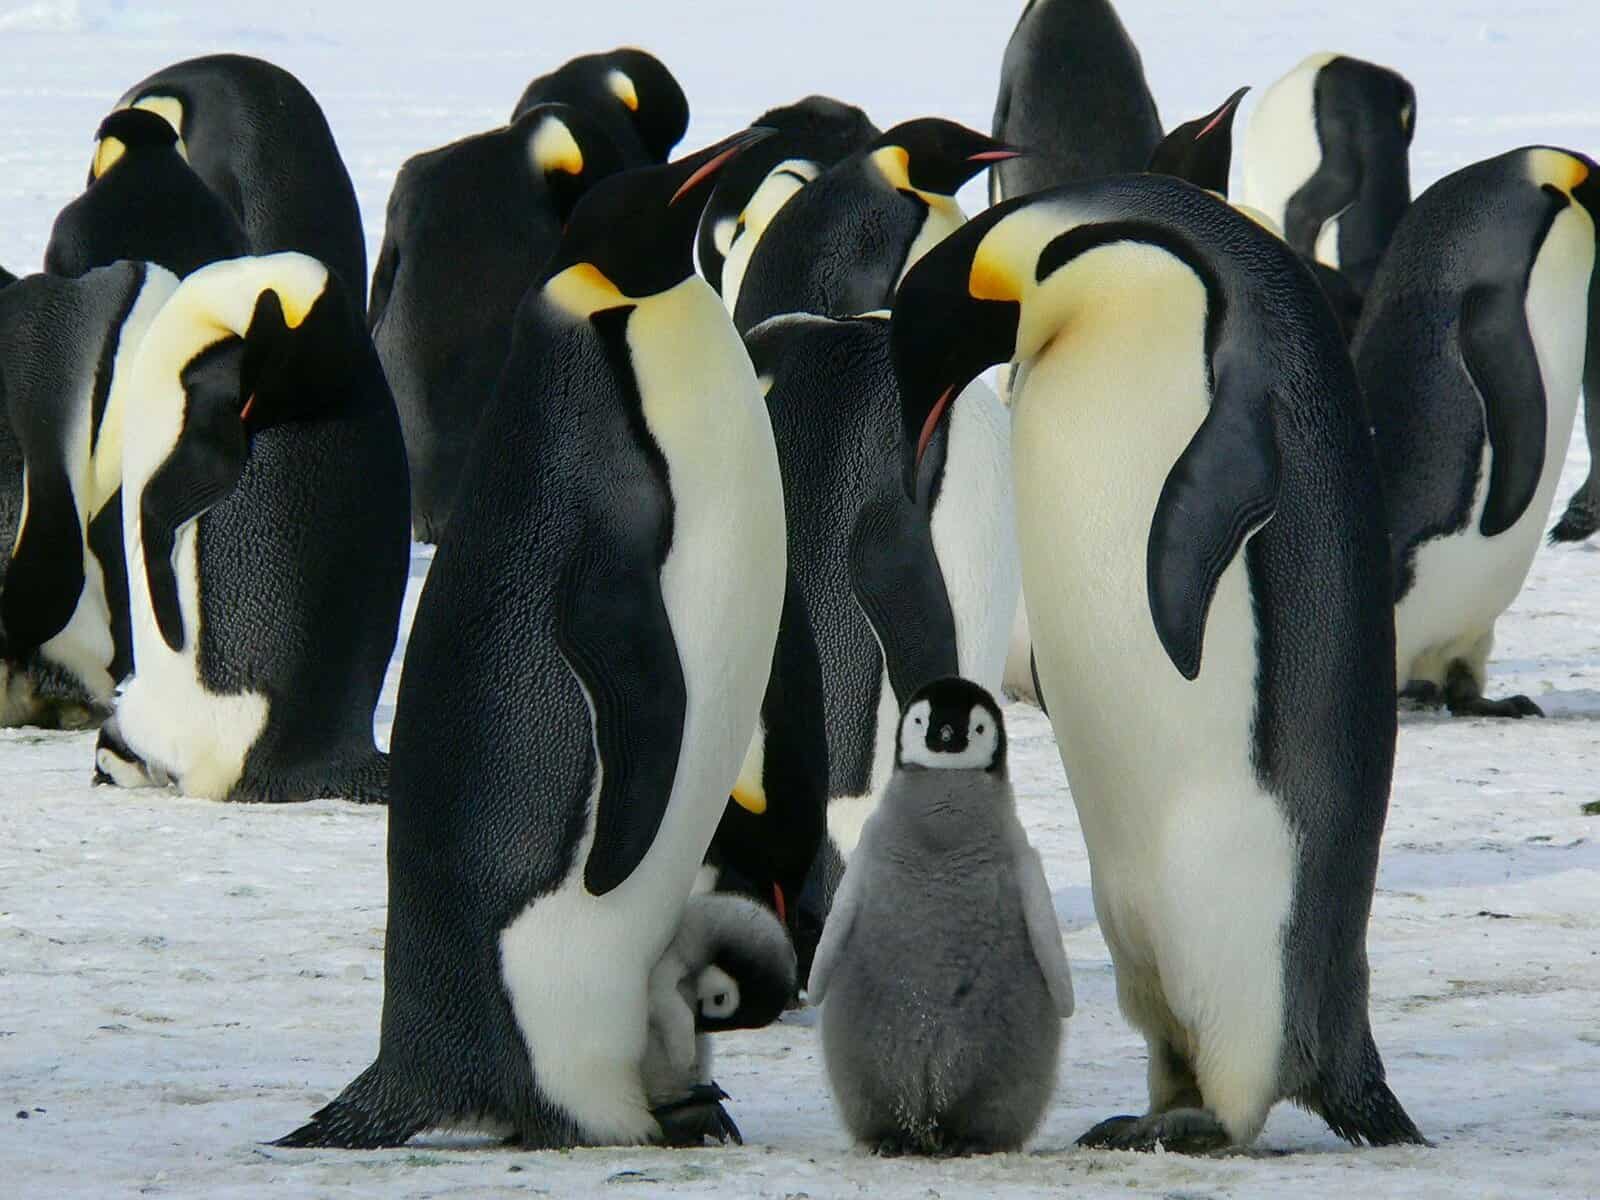 Tuxedo Penguins, penguins LearningMole